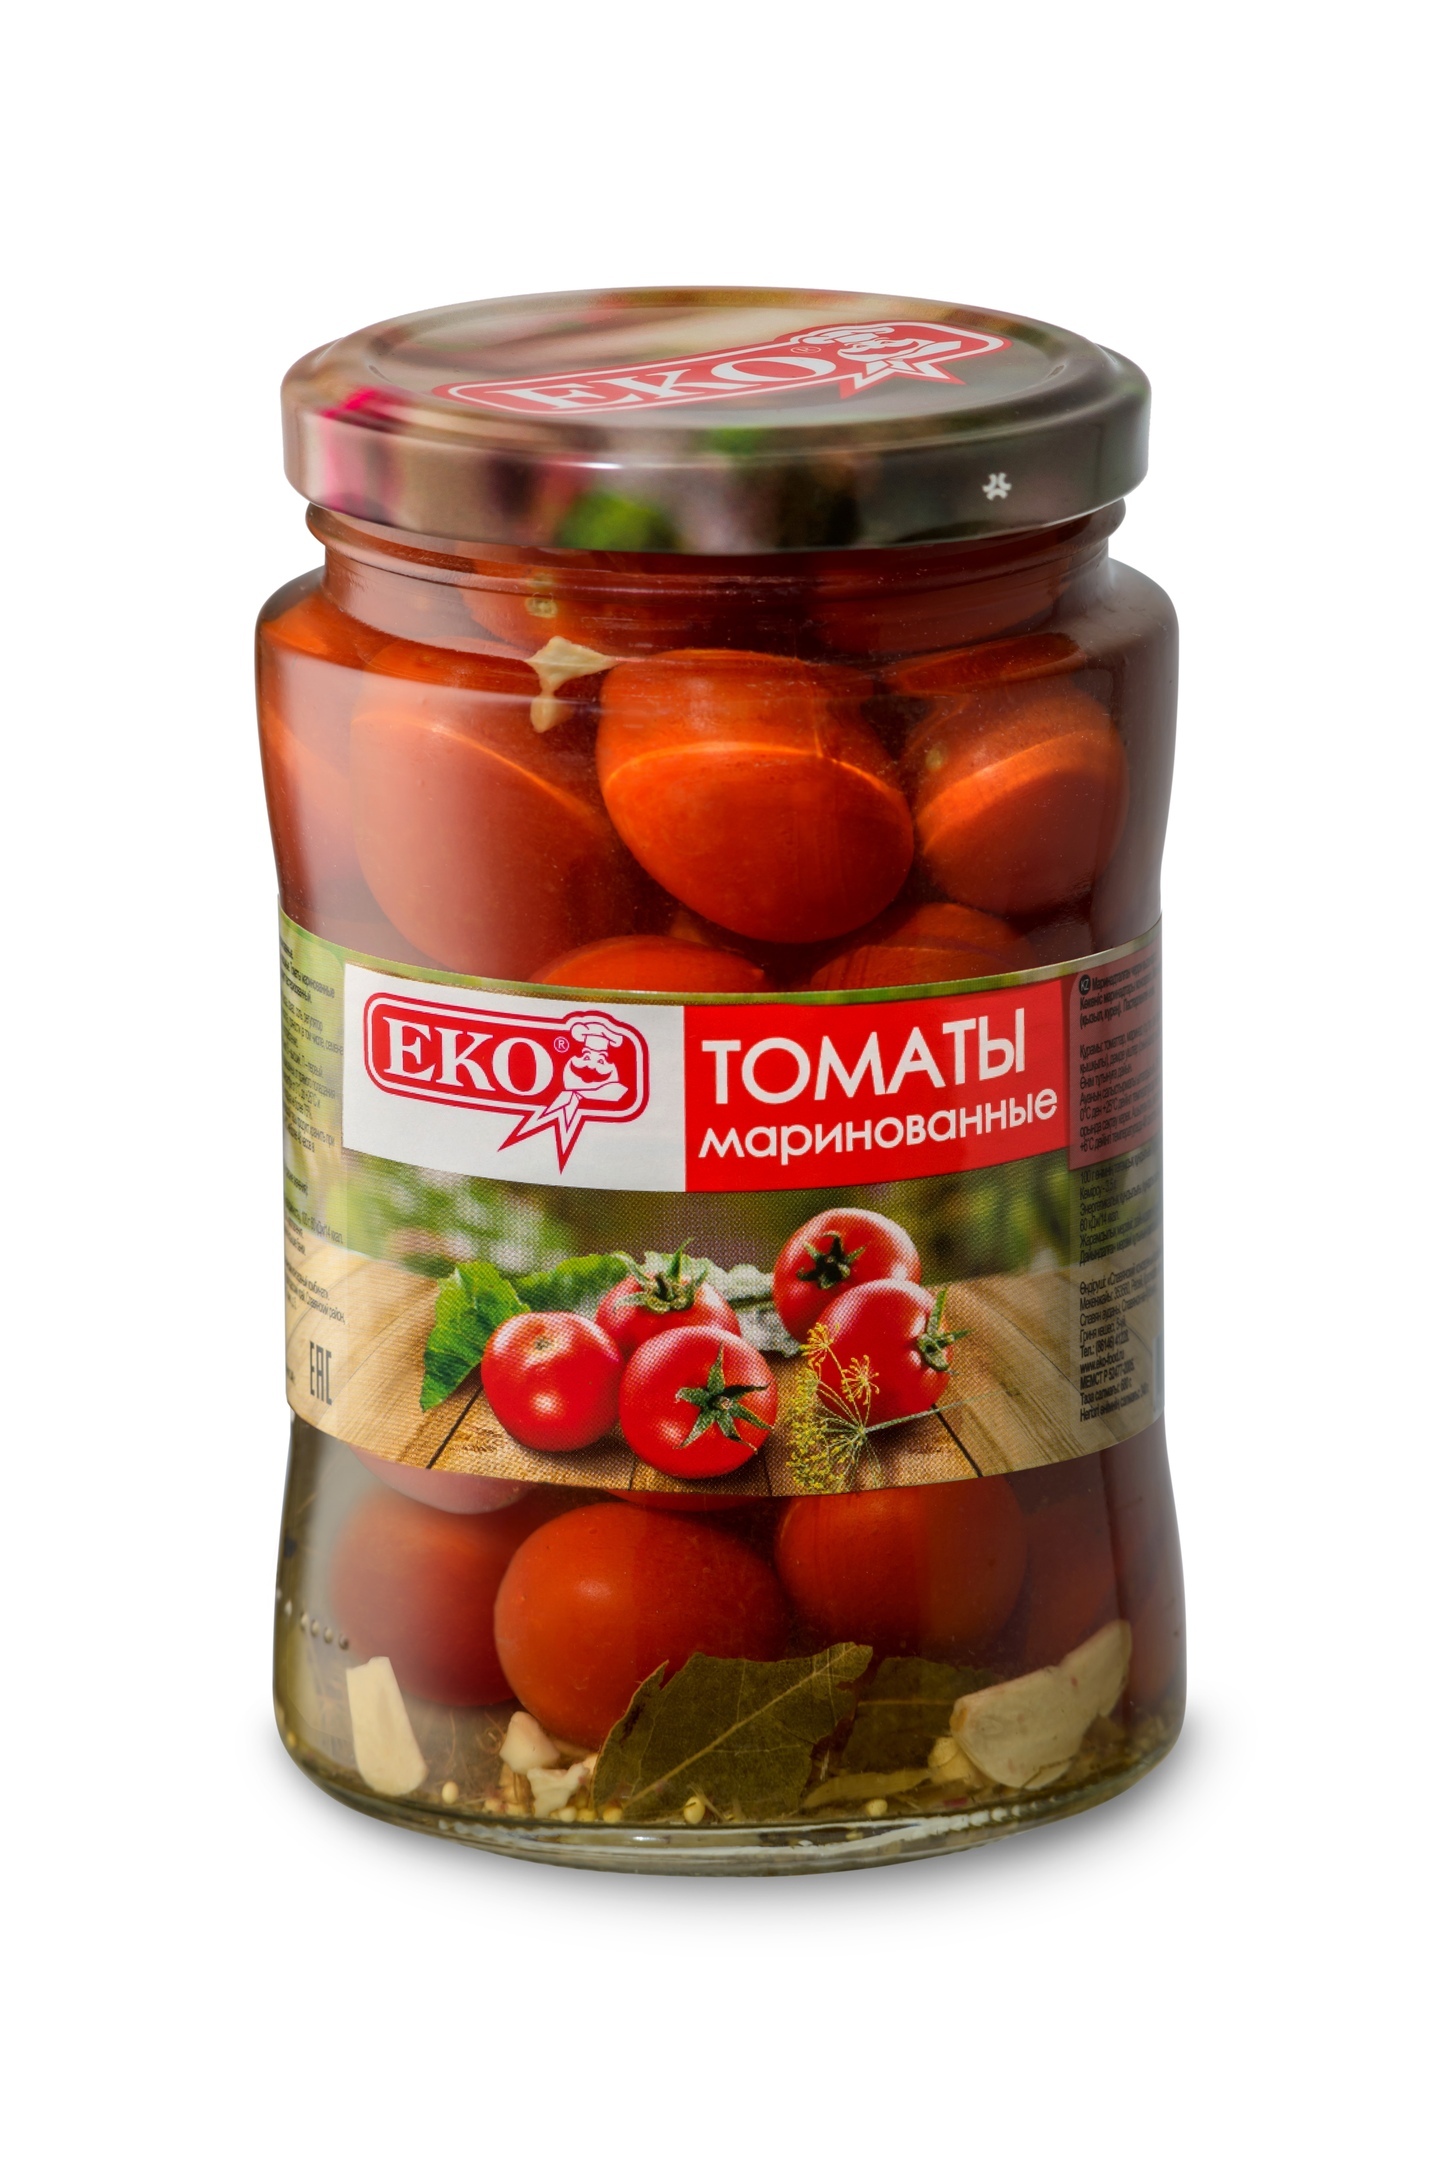 Рекомендуют ли эксперты маринованные томаты? Итоги тестирования рис-7